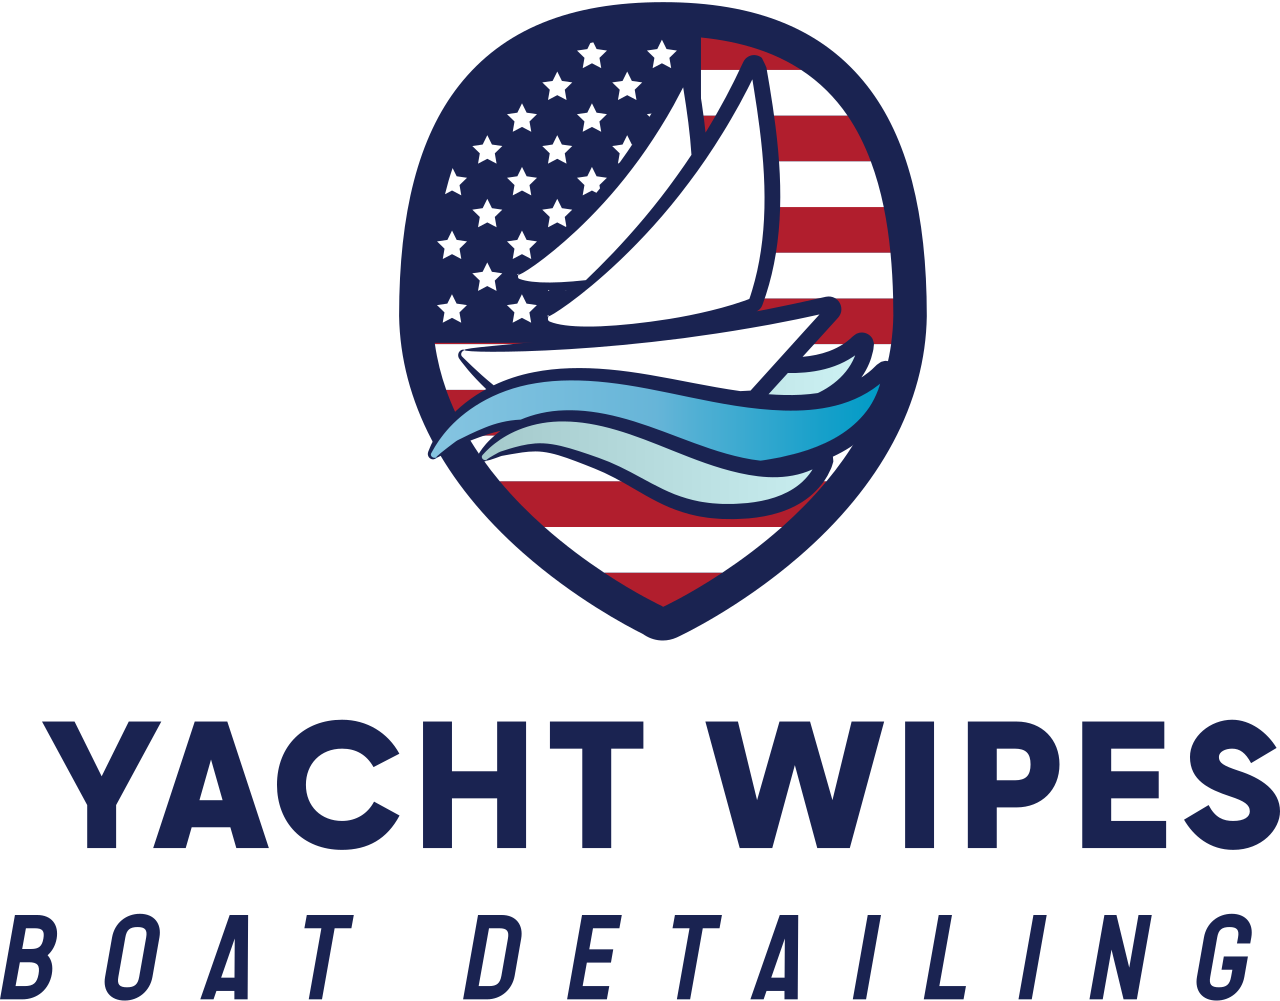 Yacht wipes's logo